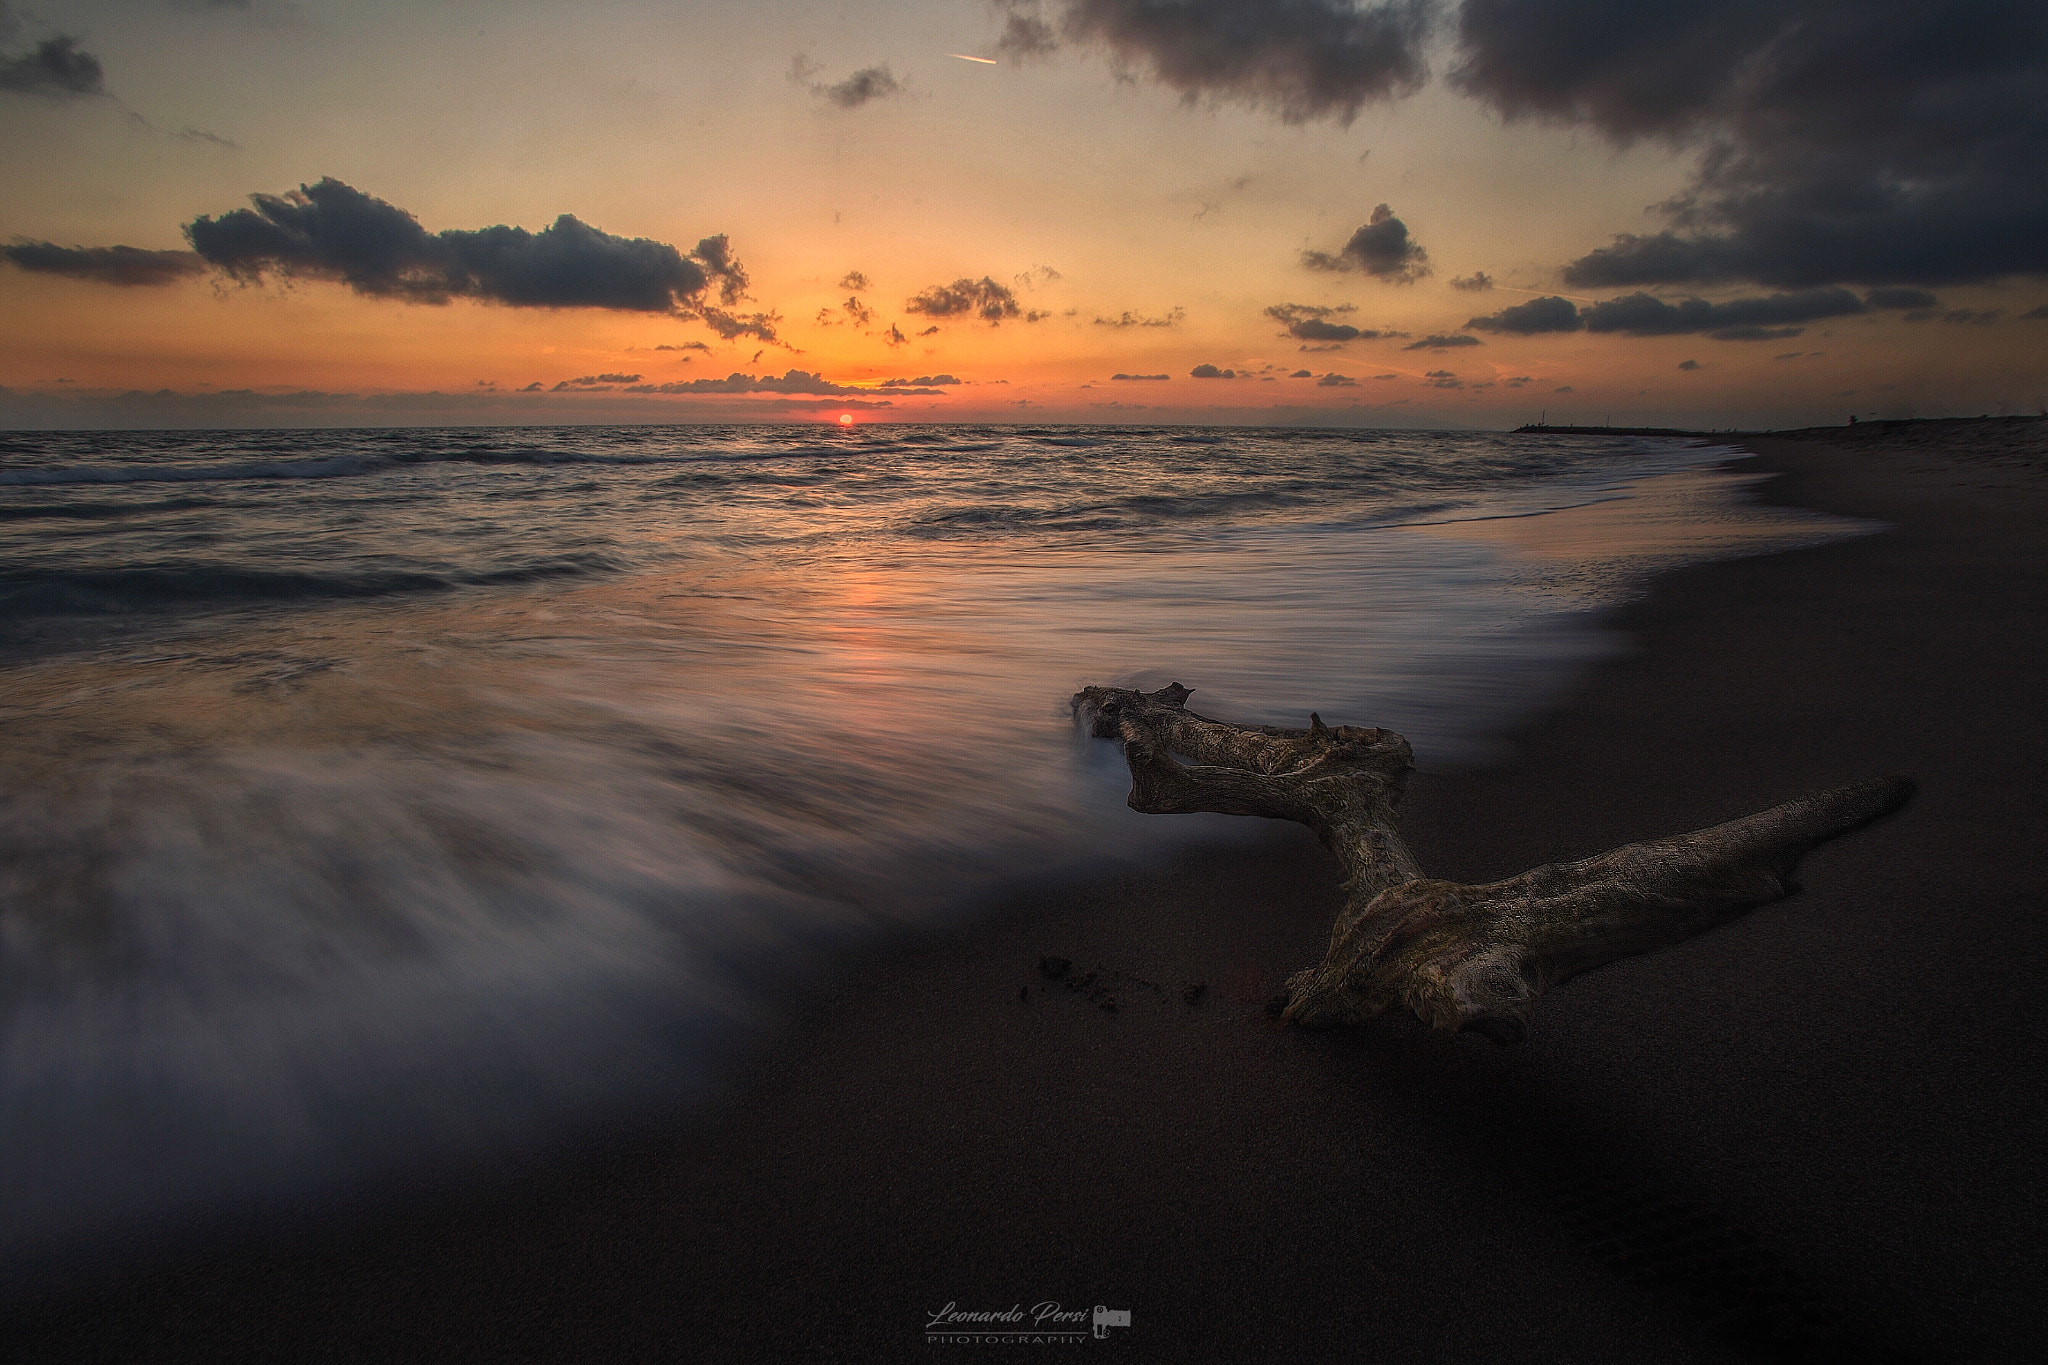 Canon EOS 6D + Canon EF 17-35mm f/2.8L sample photo. Un semplice tramonto...sulla spiaggia di montalto marina,lazio. photography